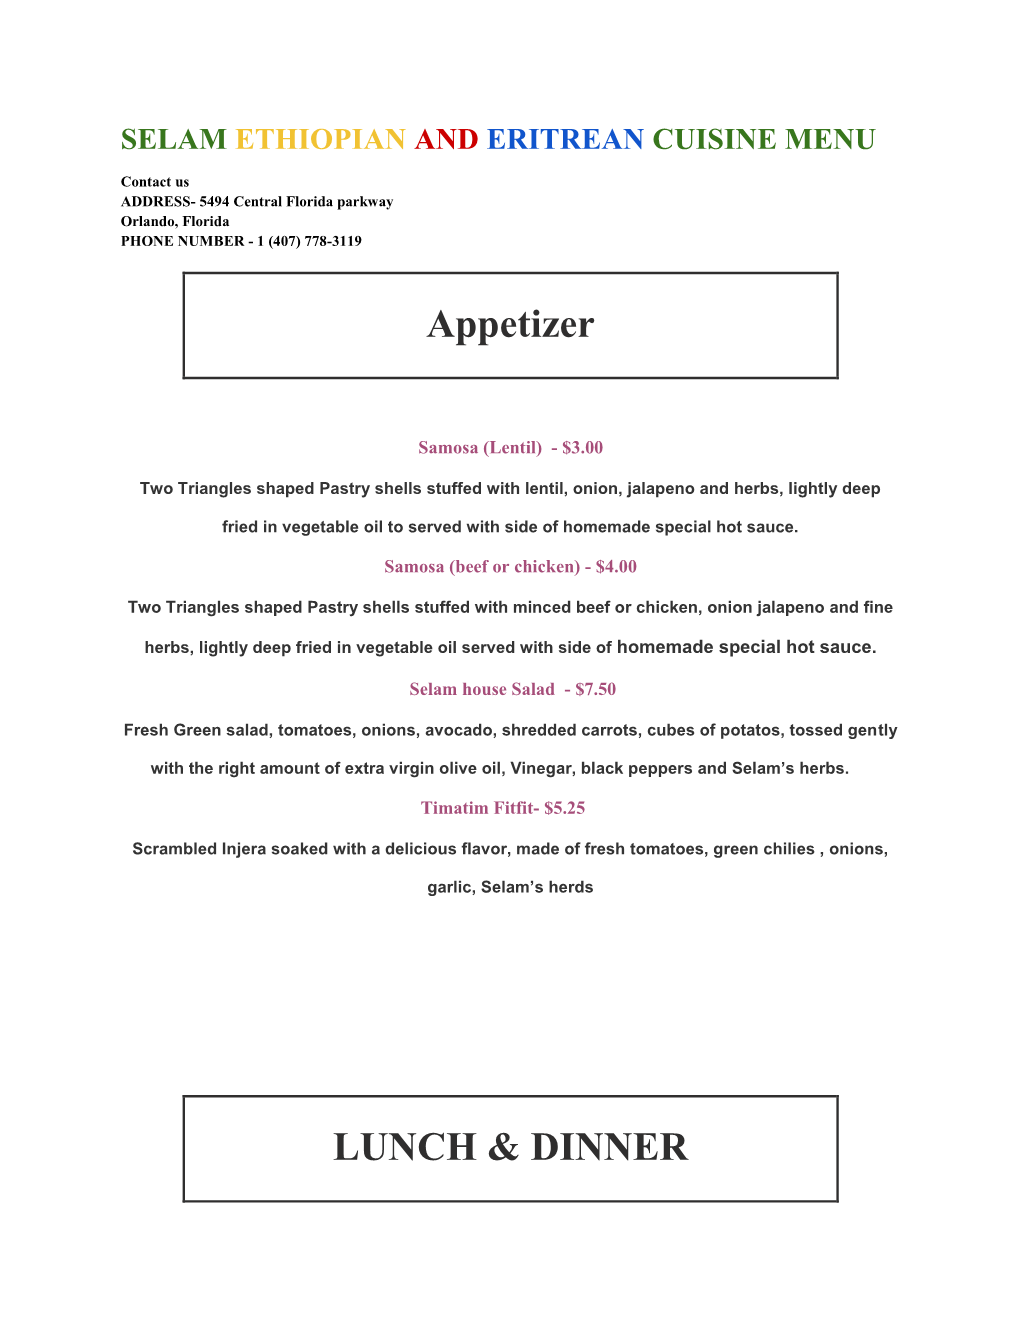 Appetizer LUNCH & DINNER